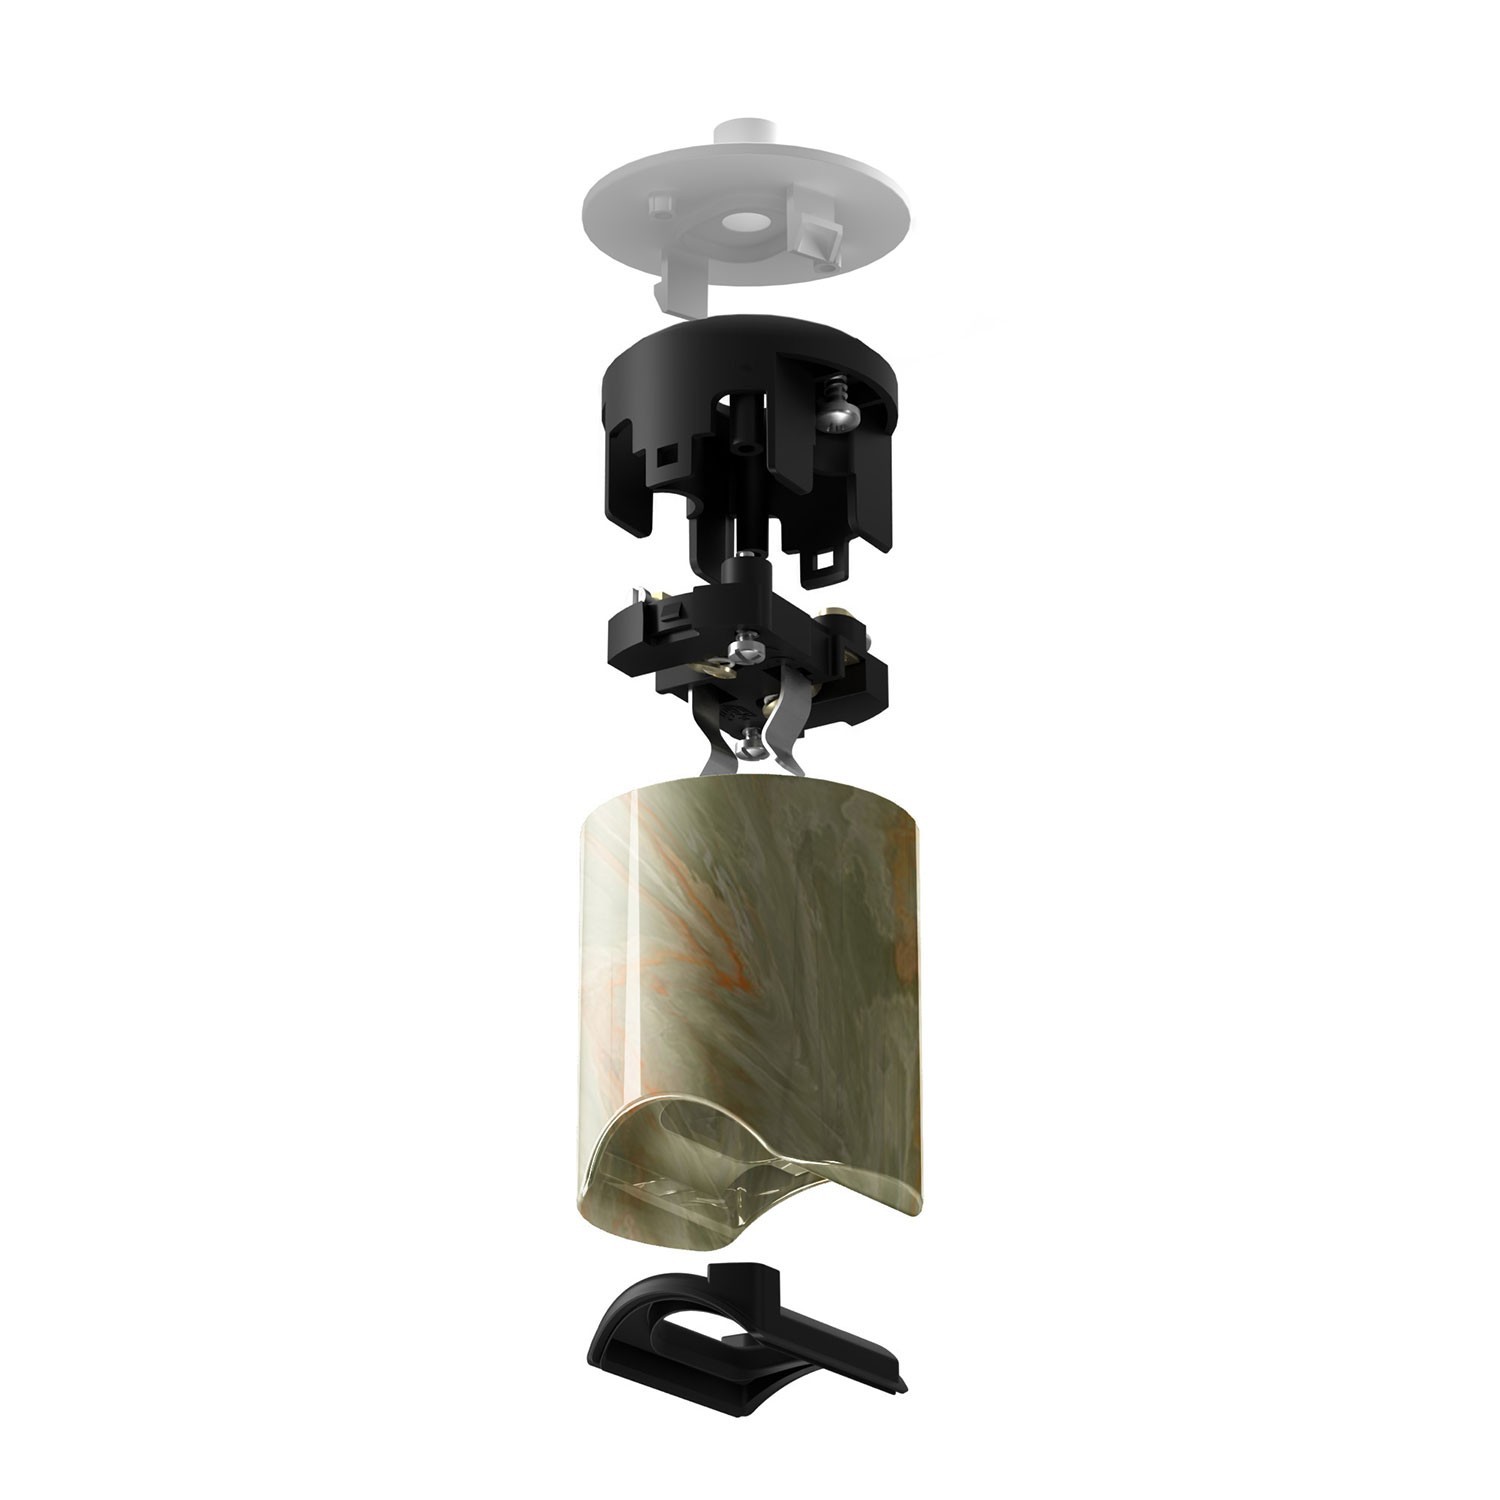 Kit portalampada esse14 per lampade a sospensione con attacco S14d